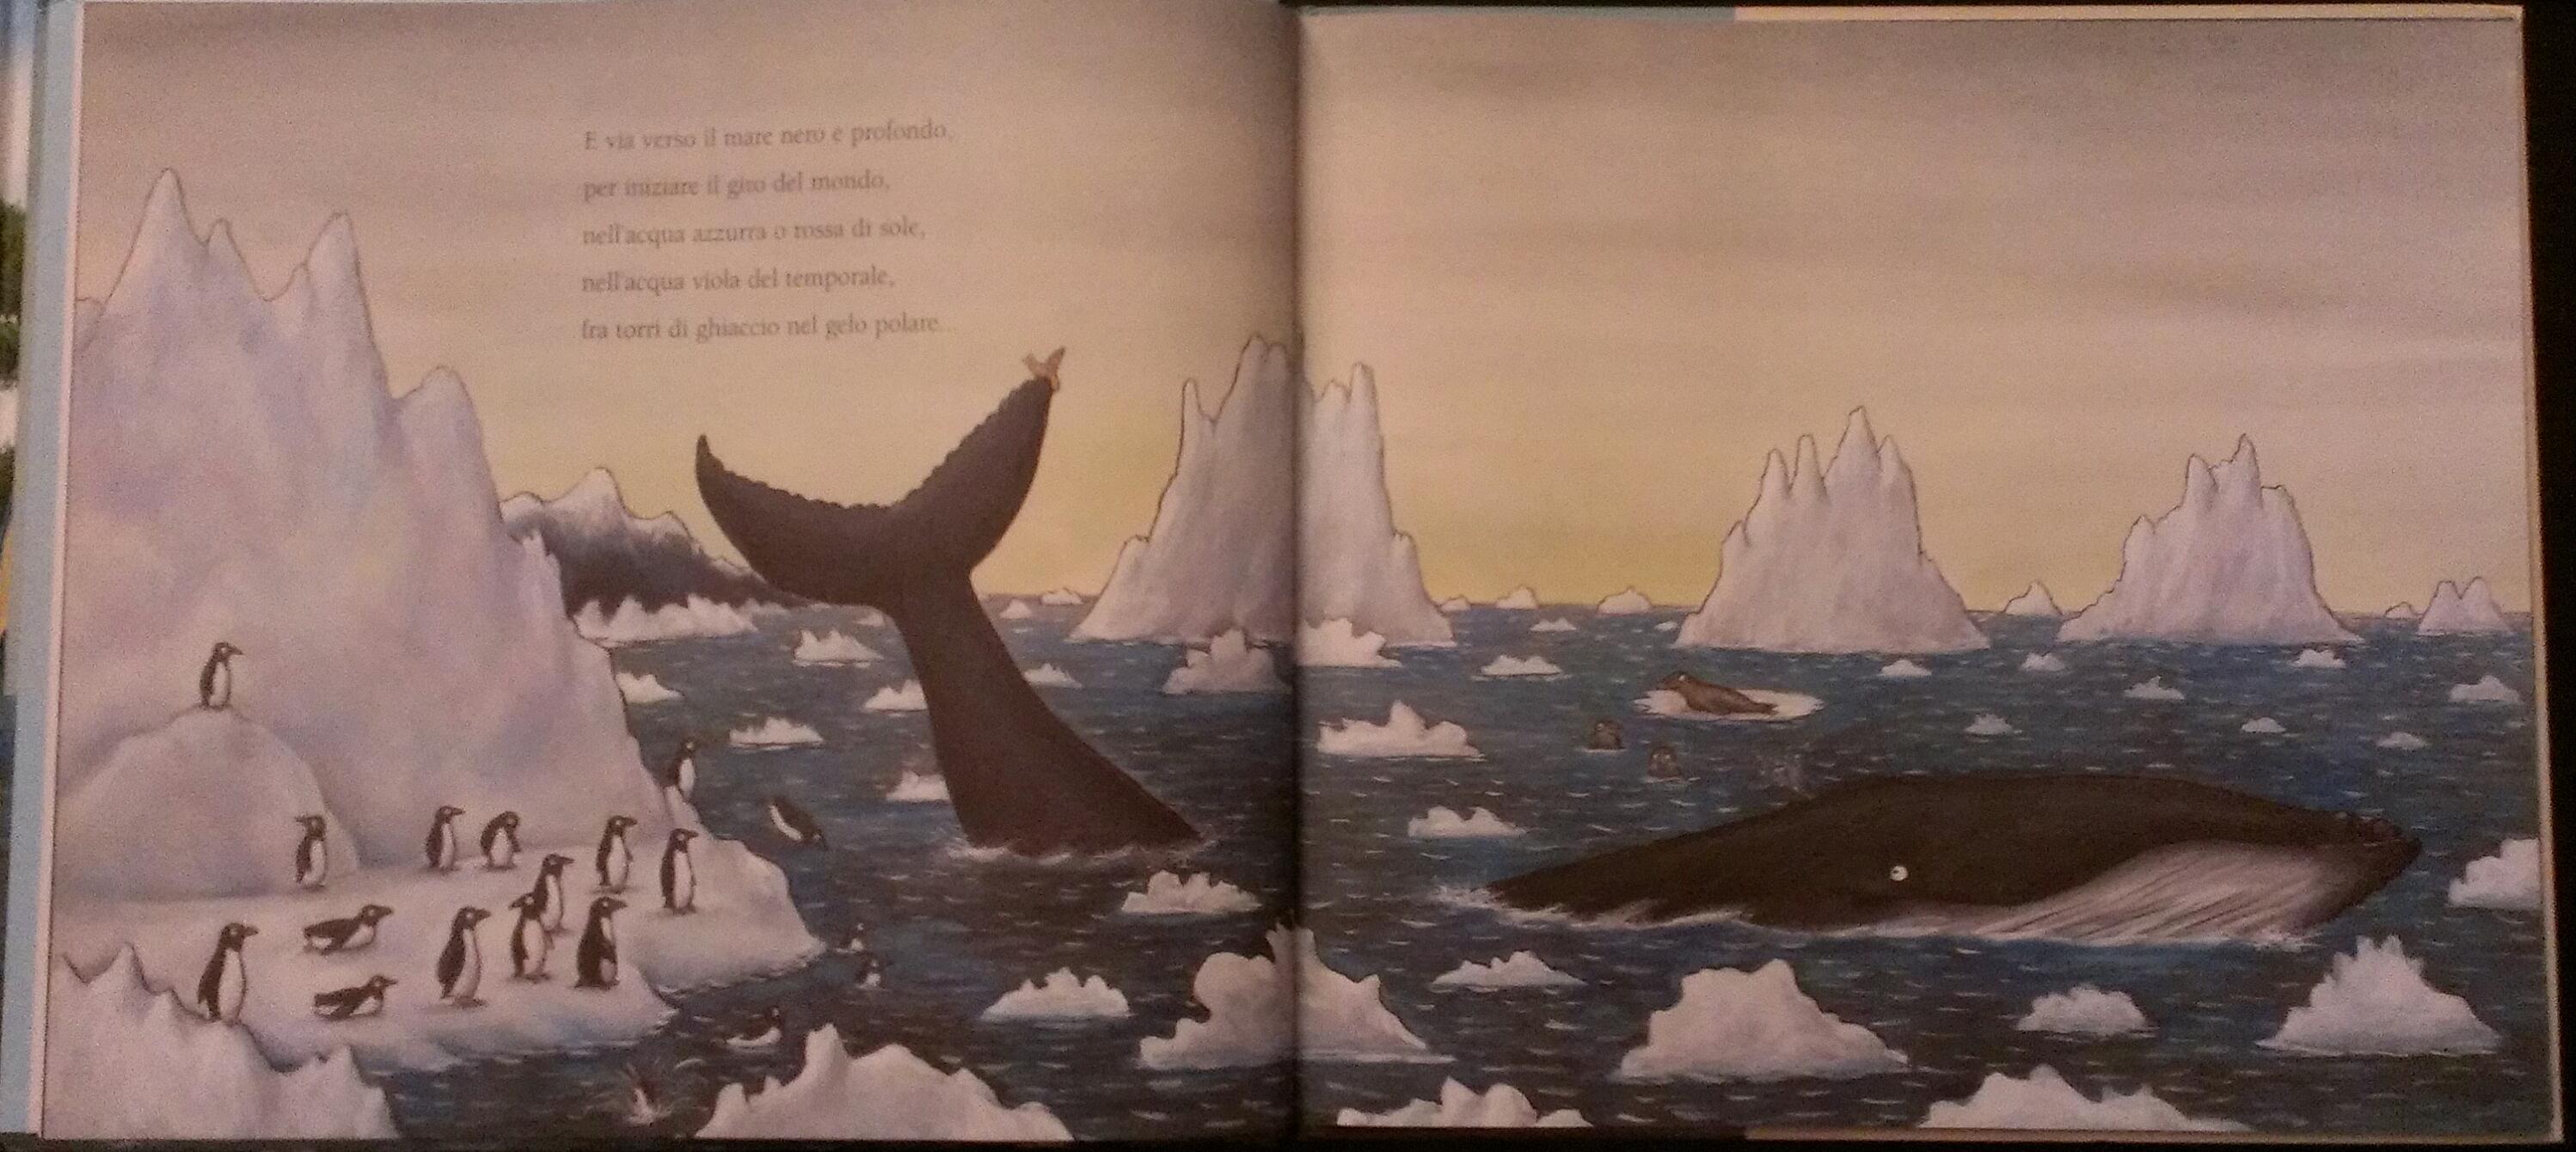 La chiocciolina e la balena di Julia Donaldson, Emme Edizioni